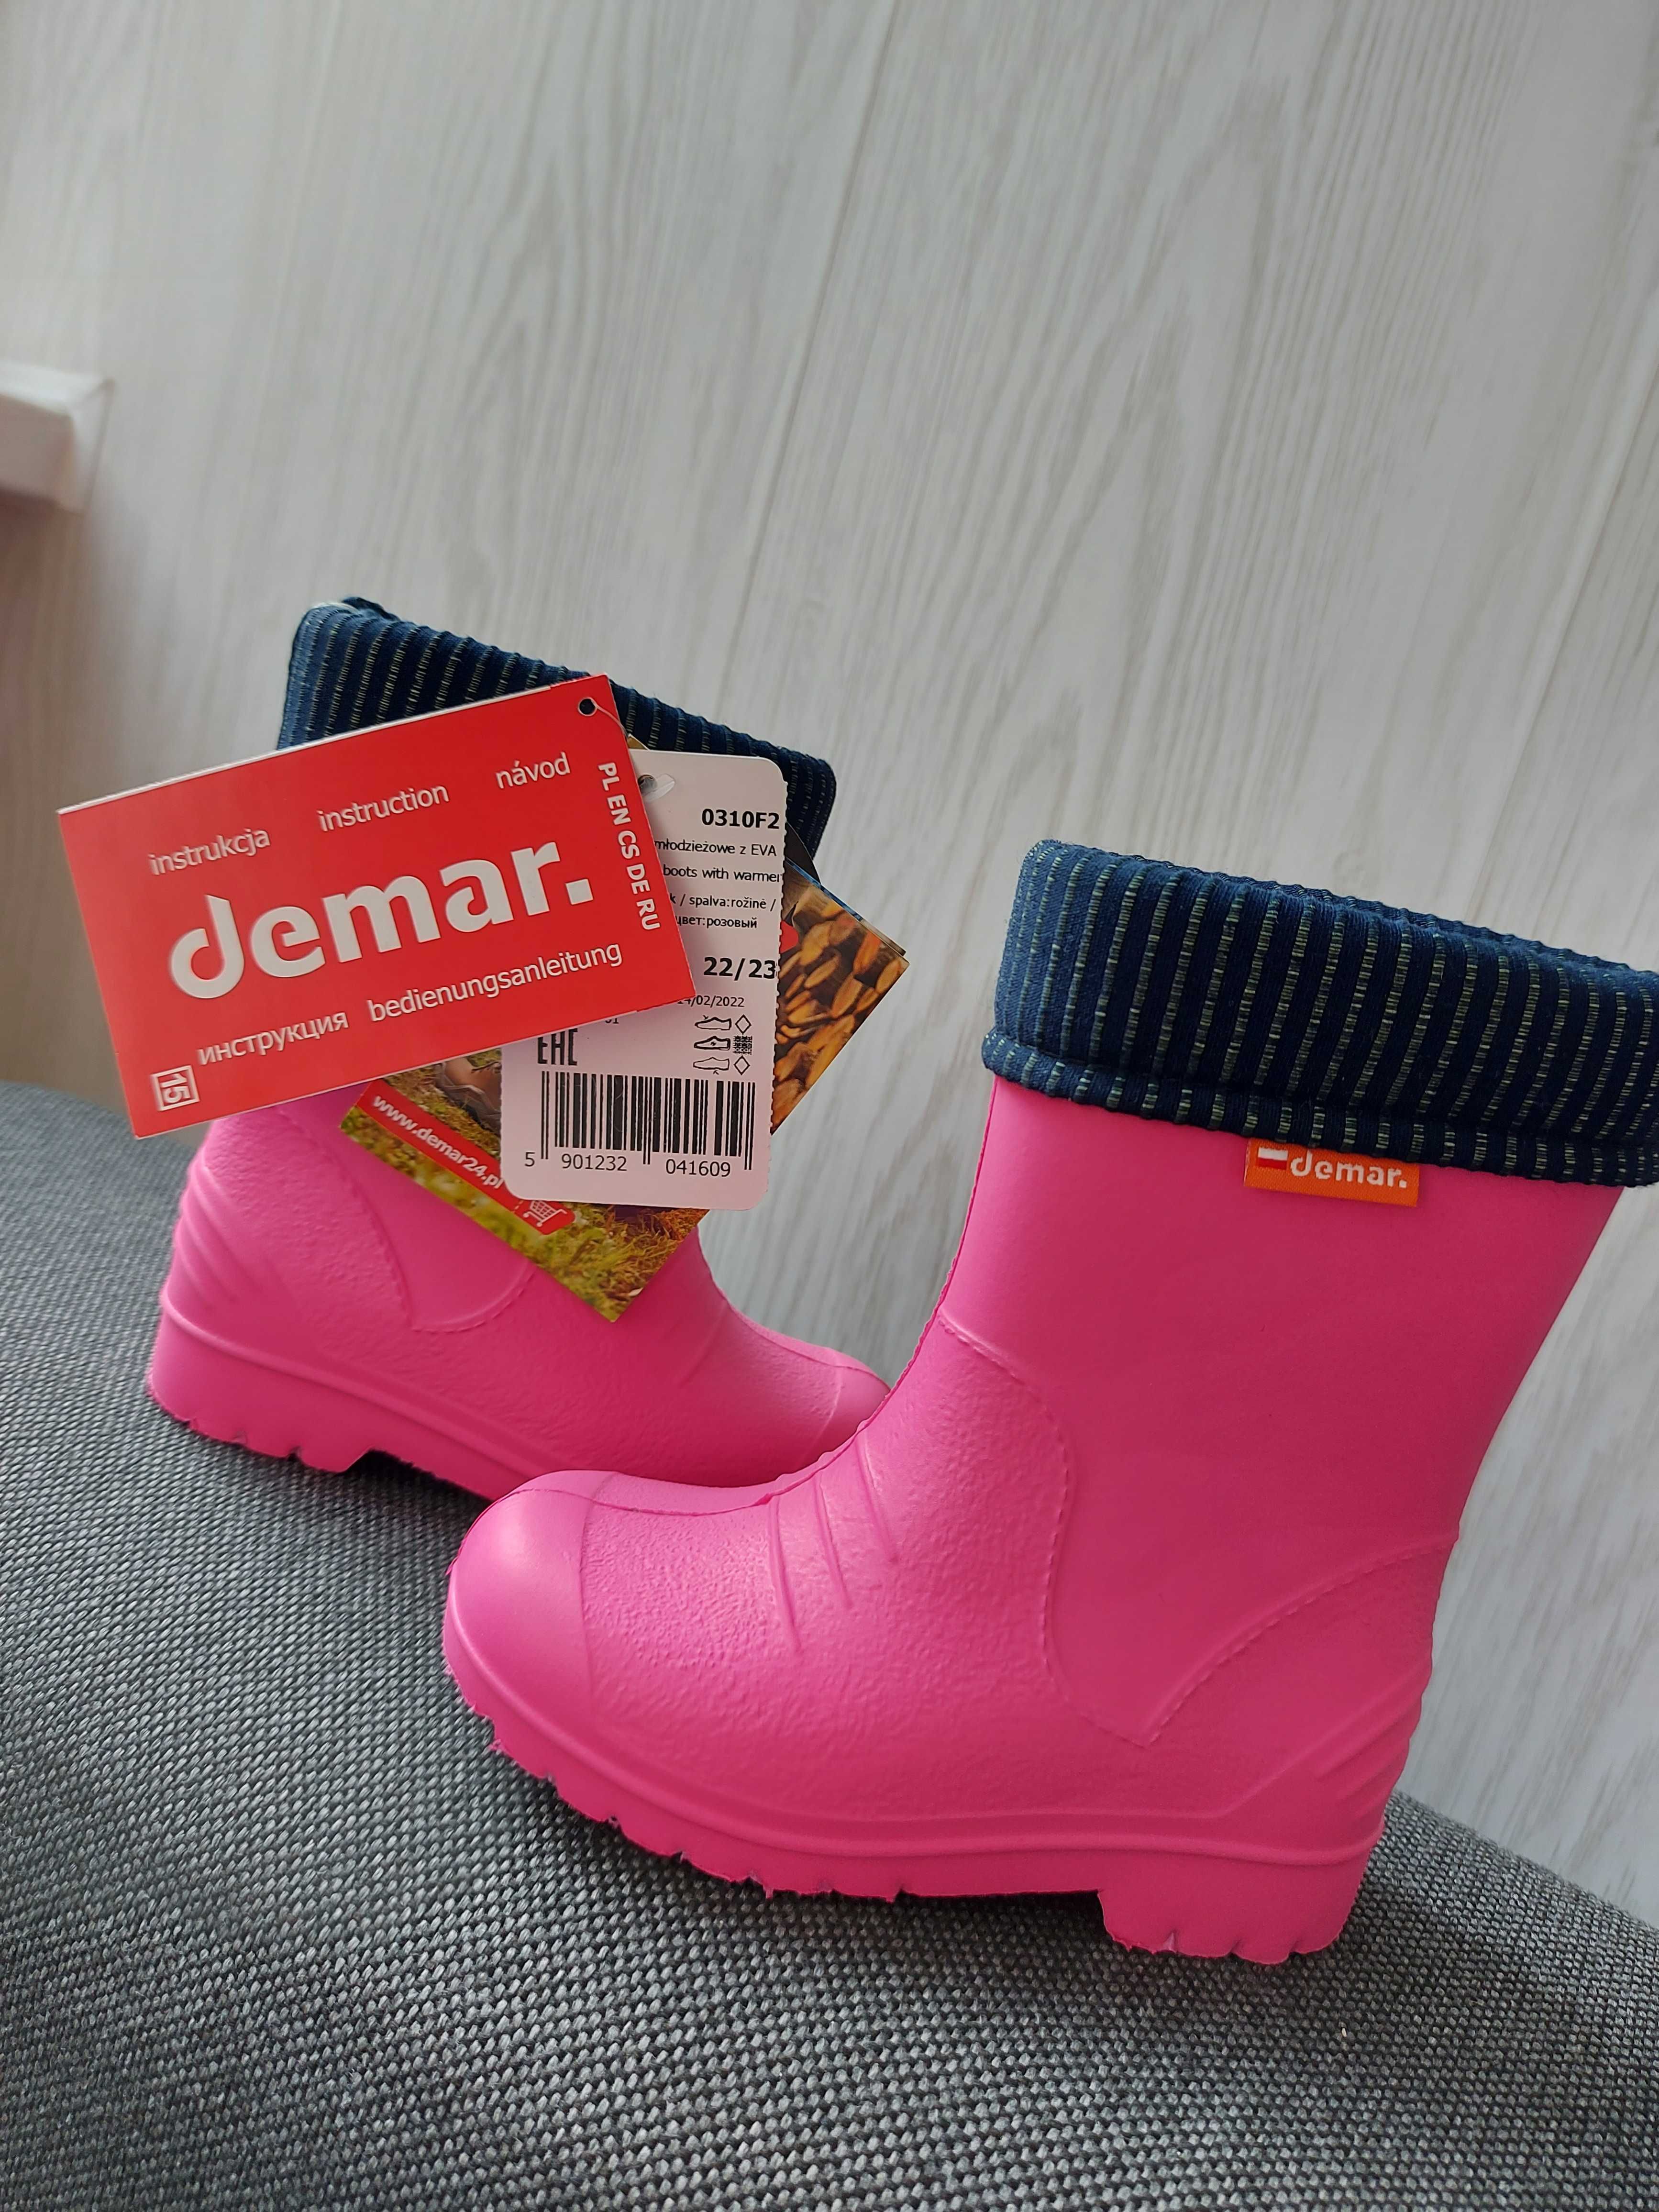 Новые резиновые сапожки Demar (пенка) с утеплителем